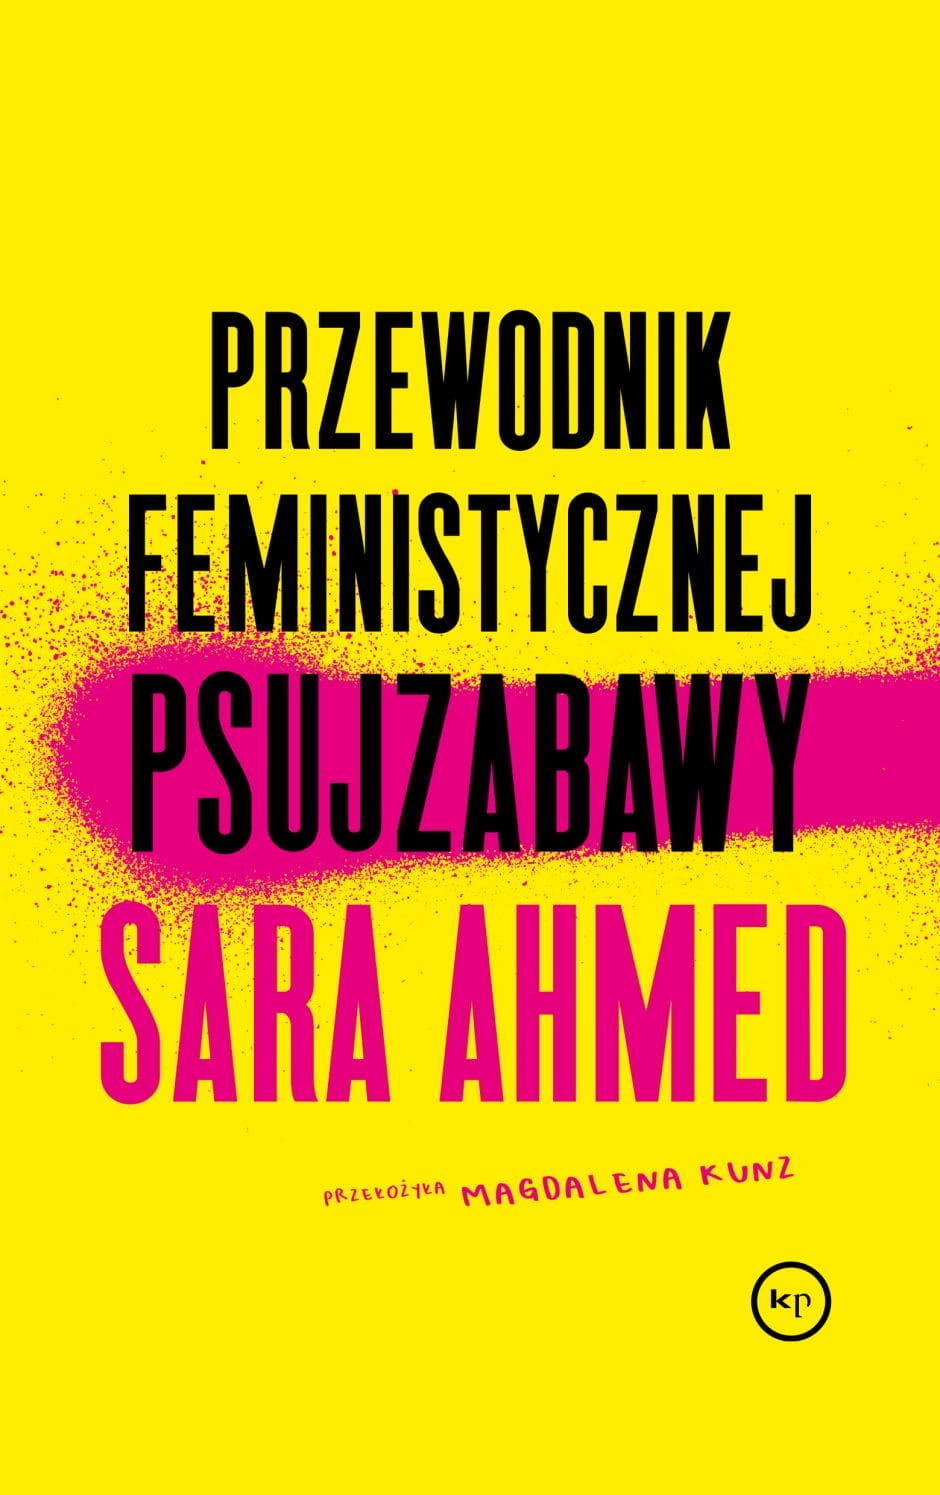 Sara Ahmed: Przewodnik feministycznej psujzabawy